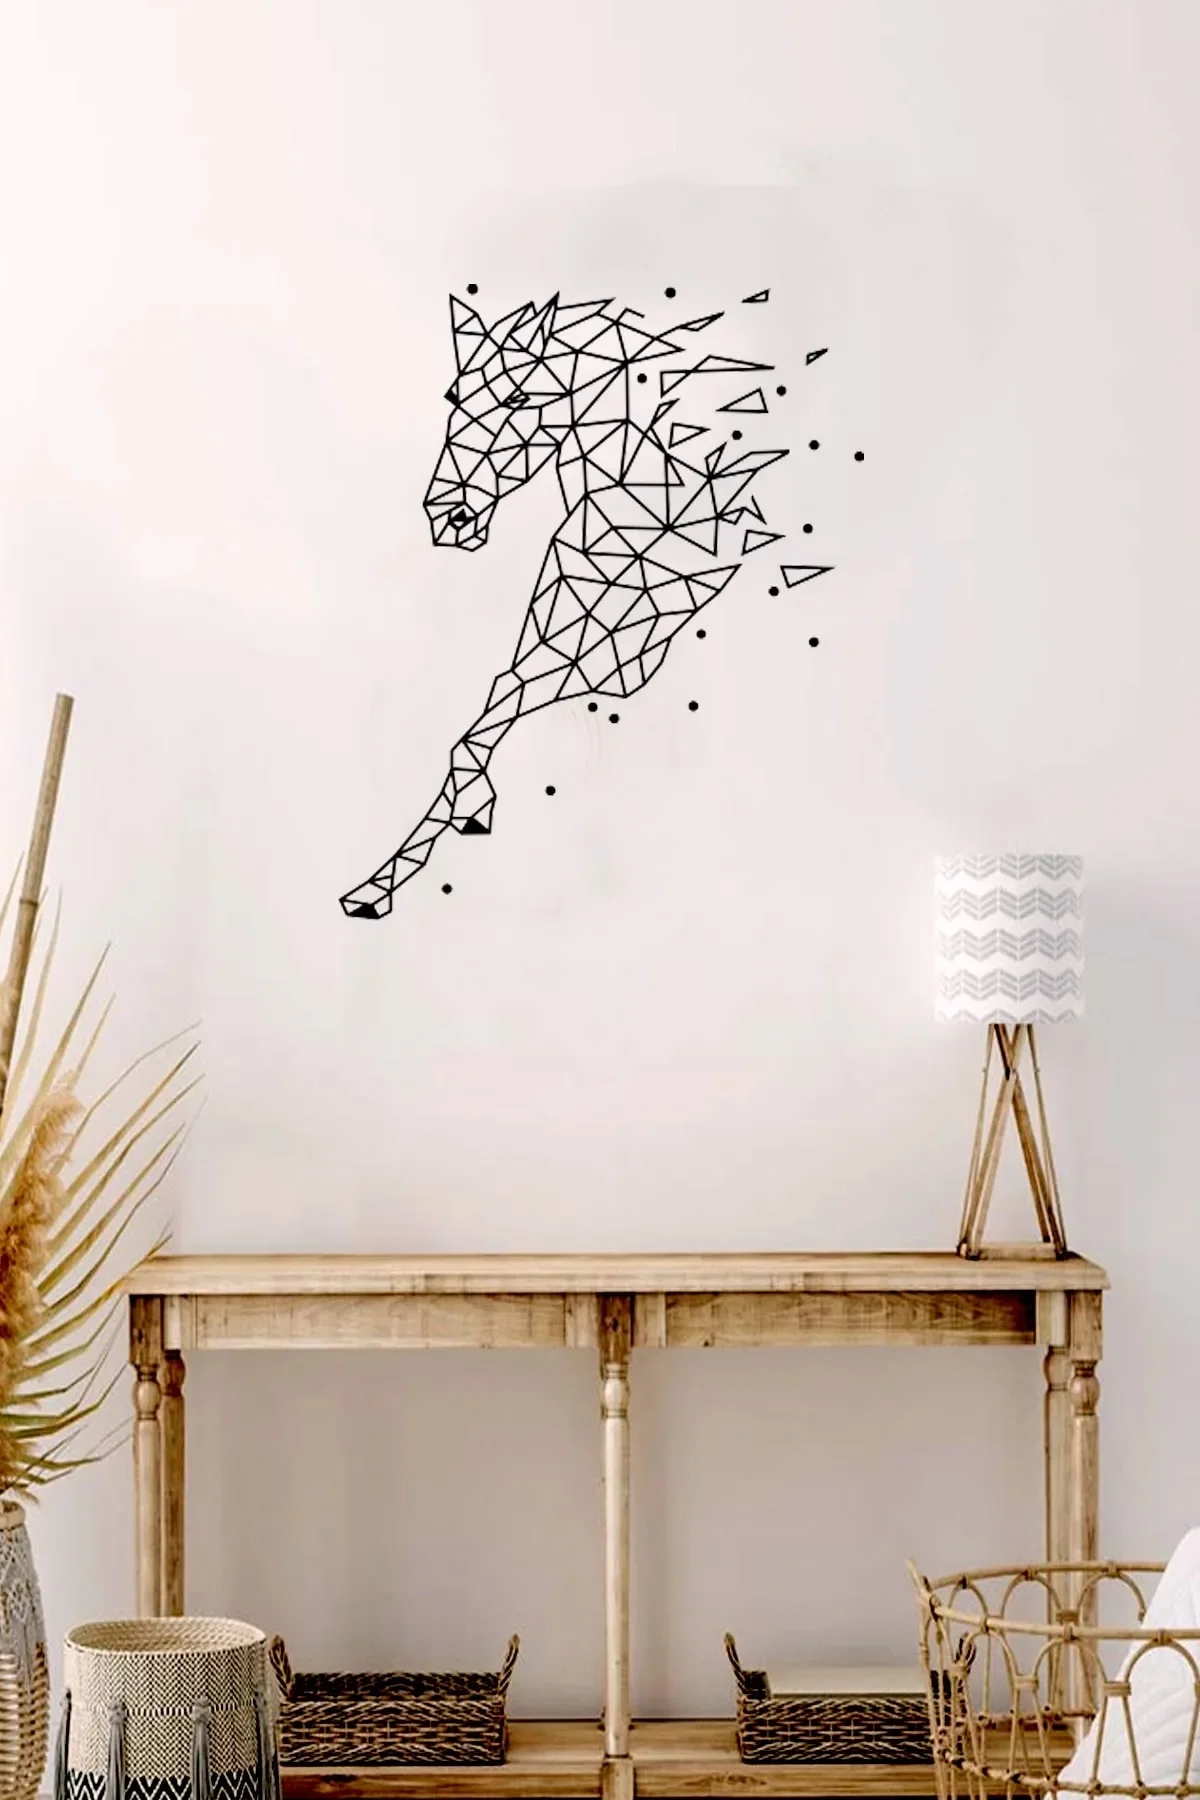 

Лазерная резка лошади рамка настенная живопись Декор дерево Лазерная резка сувениры домашний декор okda абстрактное искусство пользователь...